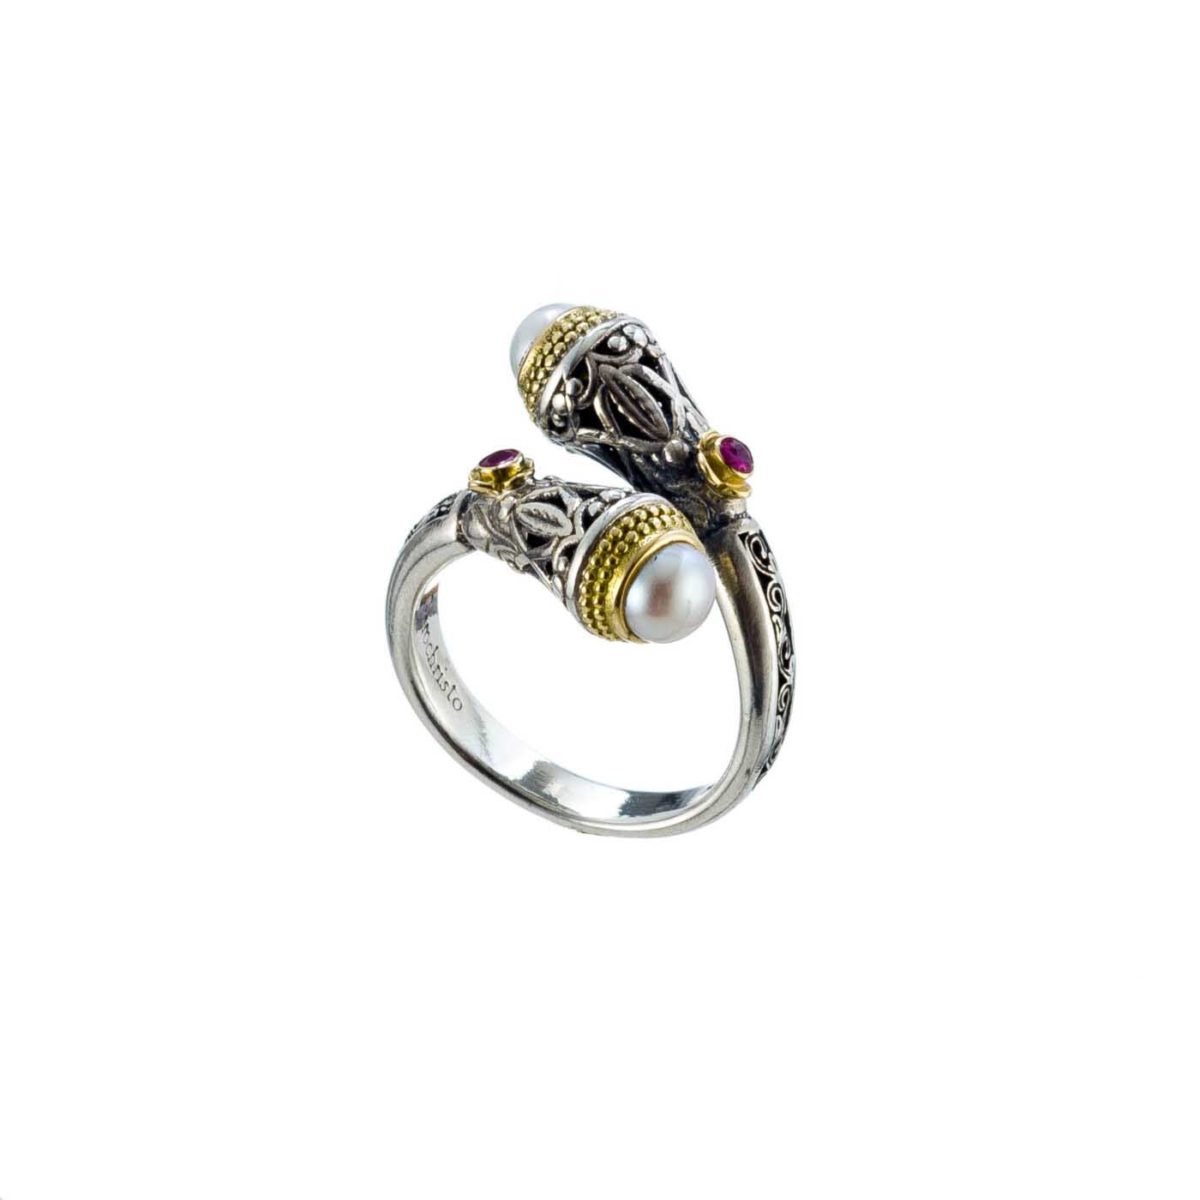 Ιδιαίτερο χειροποίητο δαχτυλίδι Gerochristos στολισμένο με μαργαριτάρια γλυκού νερού και ρουμπίνια